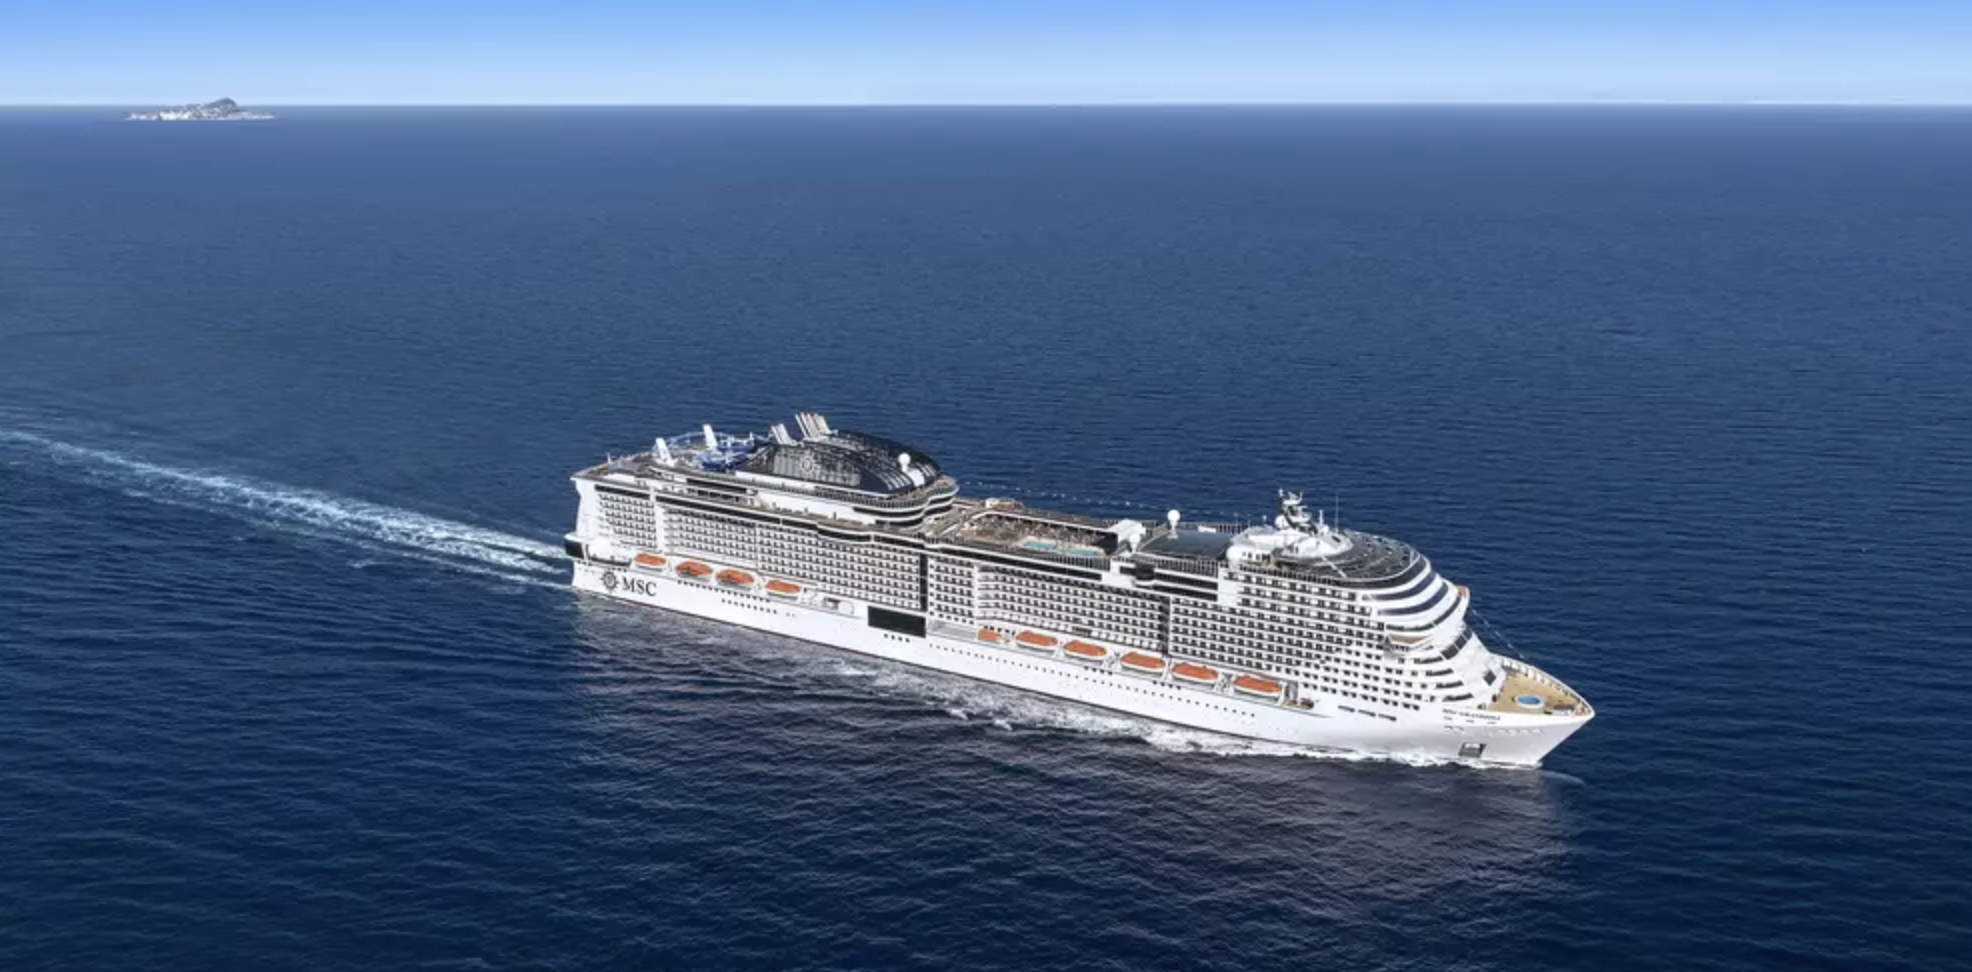 MSC Cruises to resume sailings next week - Cruise Passenger